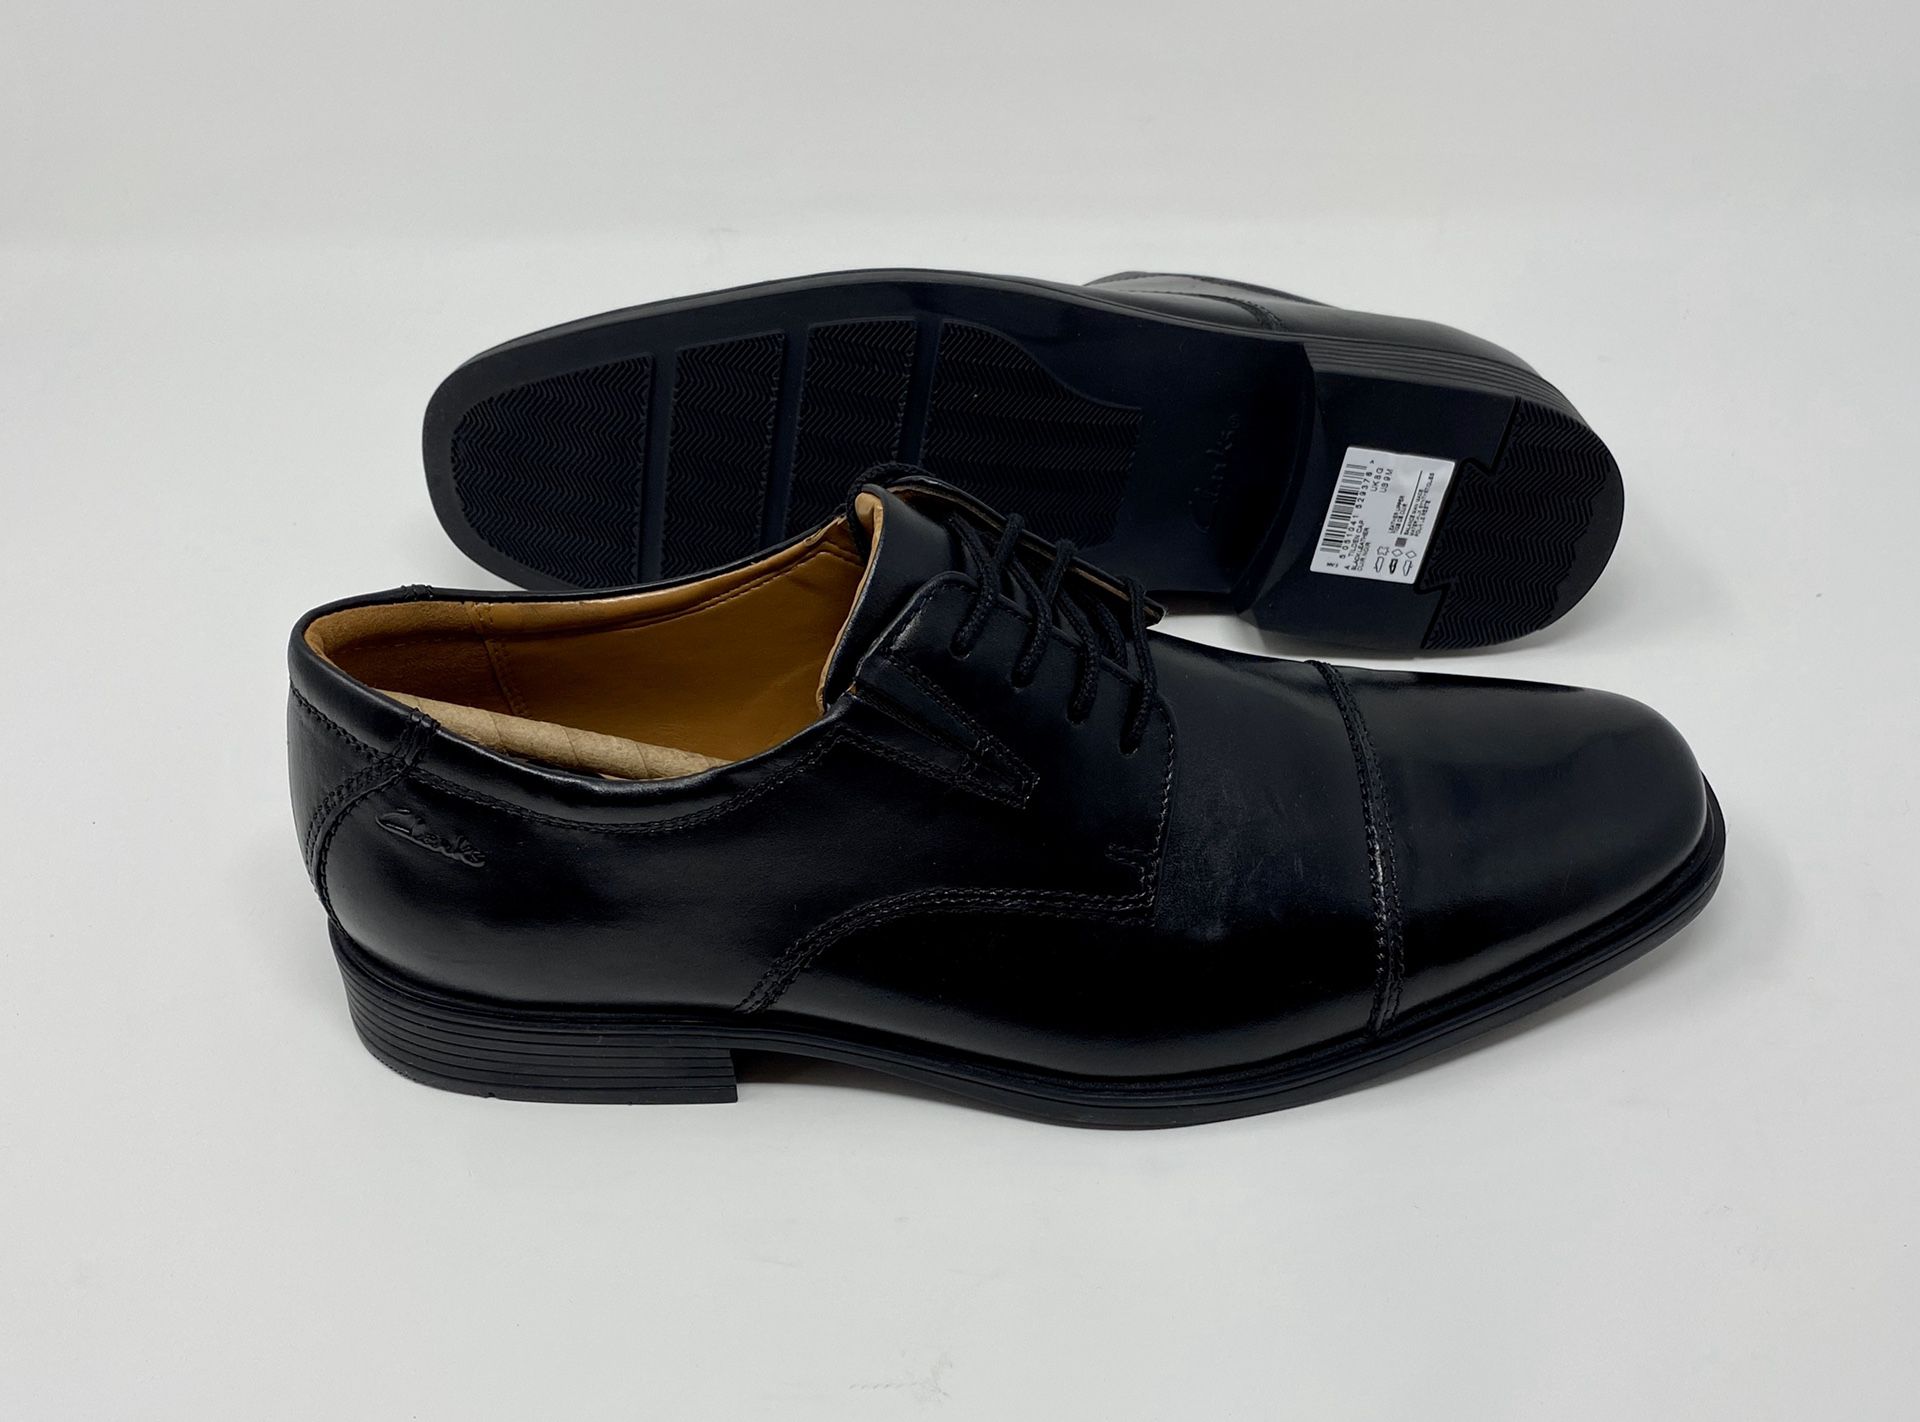 Clarks Men’s Tilden Cap Leather Oxford Dress Shoes